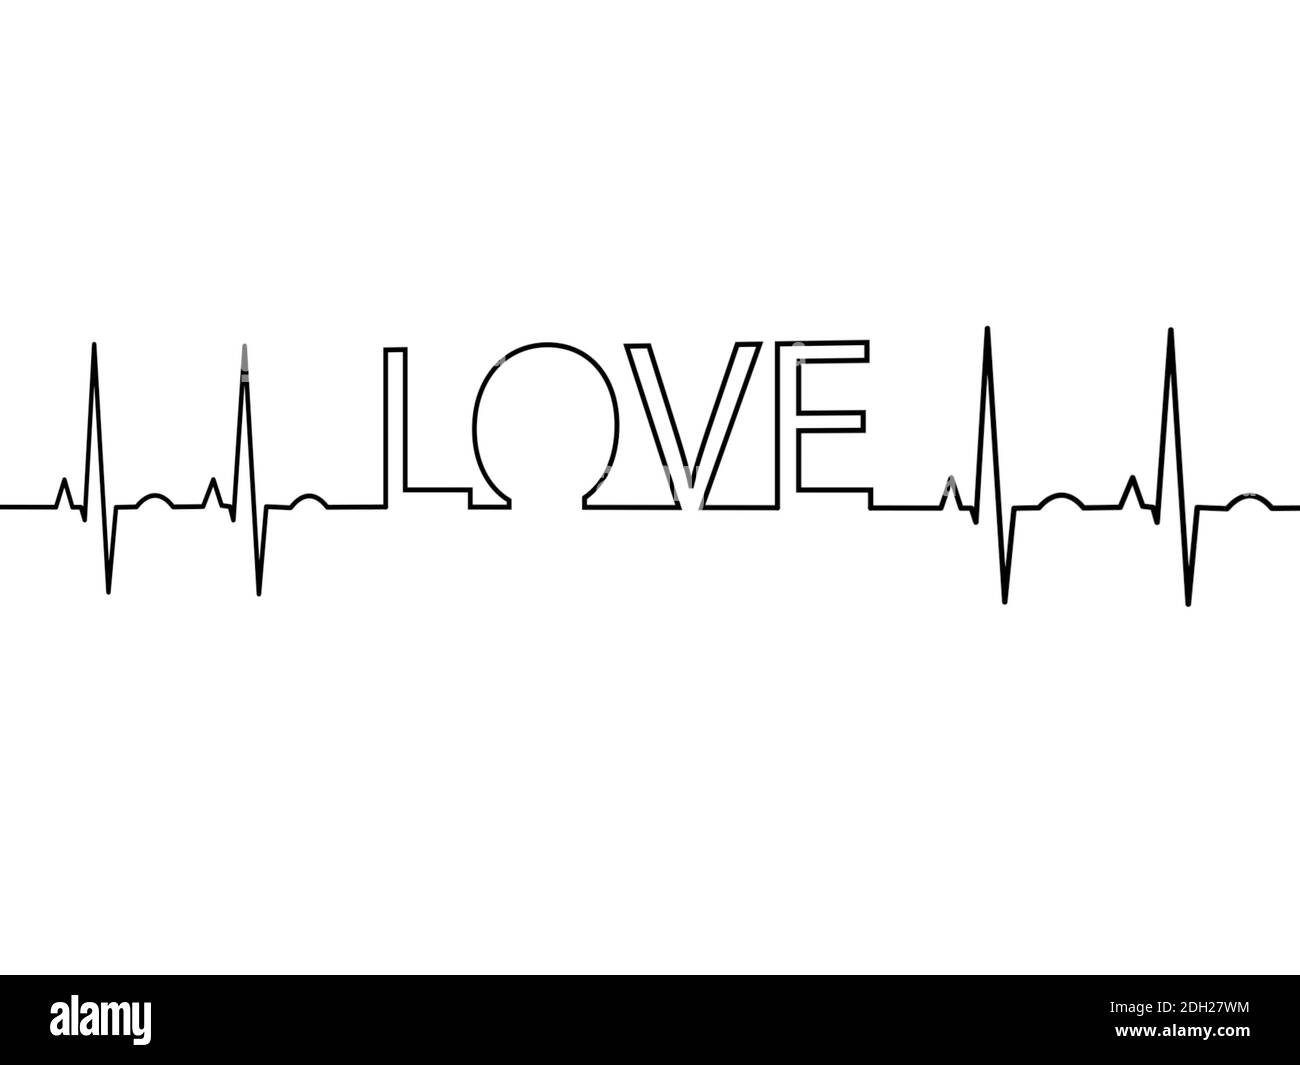 Heartbeat wallpaper by MrsD  Download on ZEDGE  885d